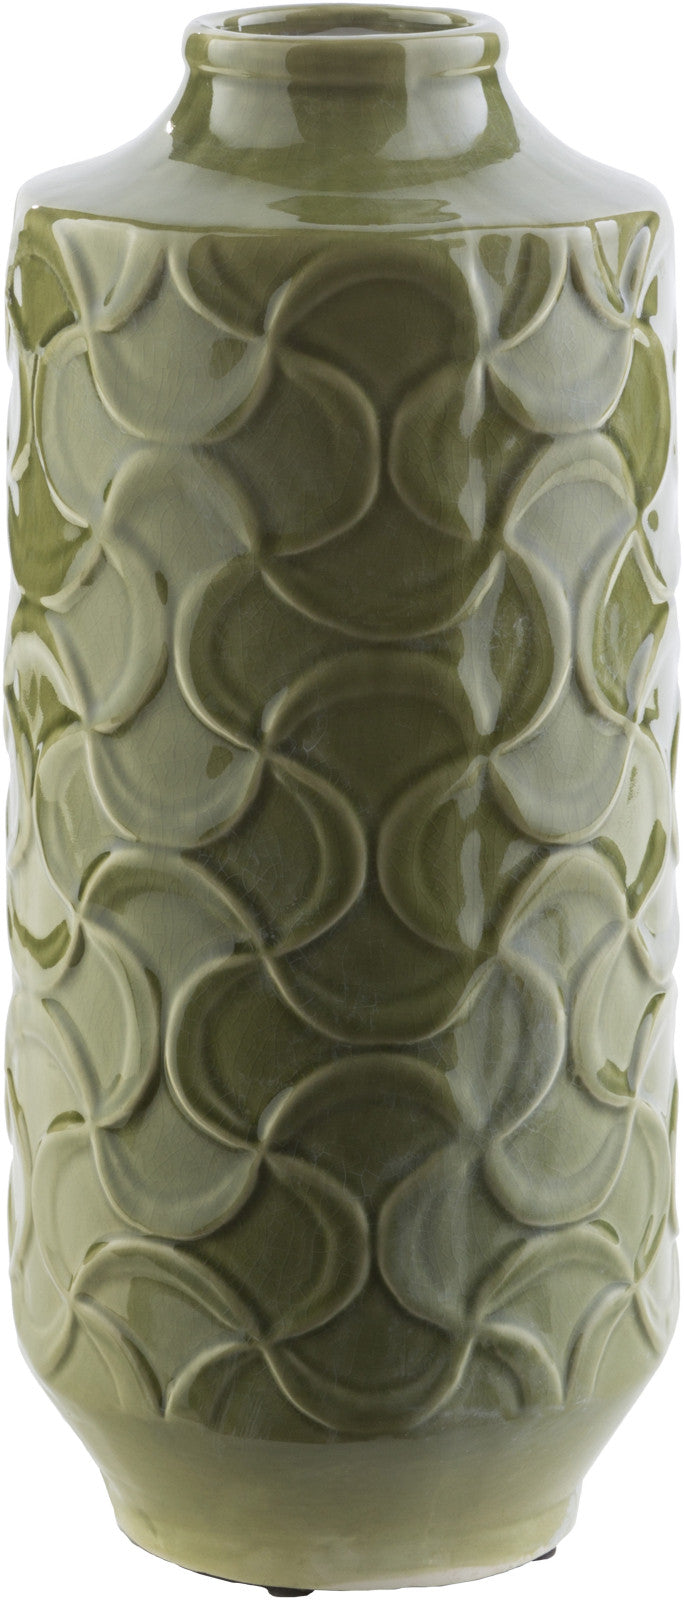 Surya Loyola LLO-111 Vase main image